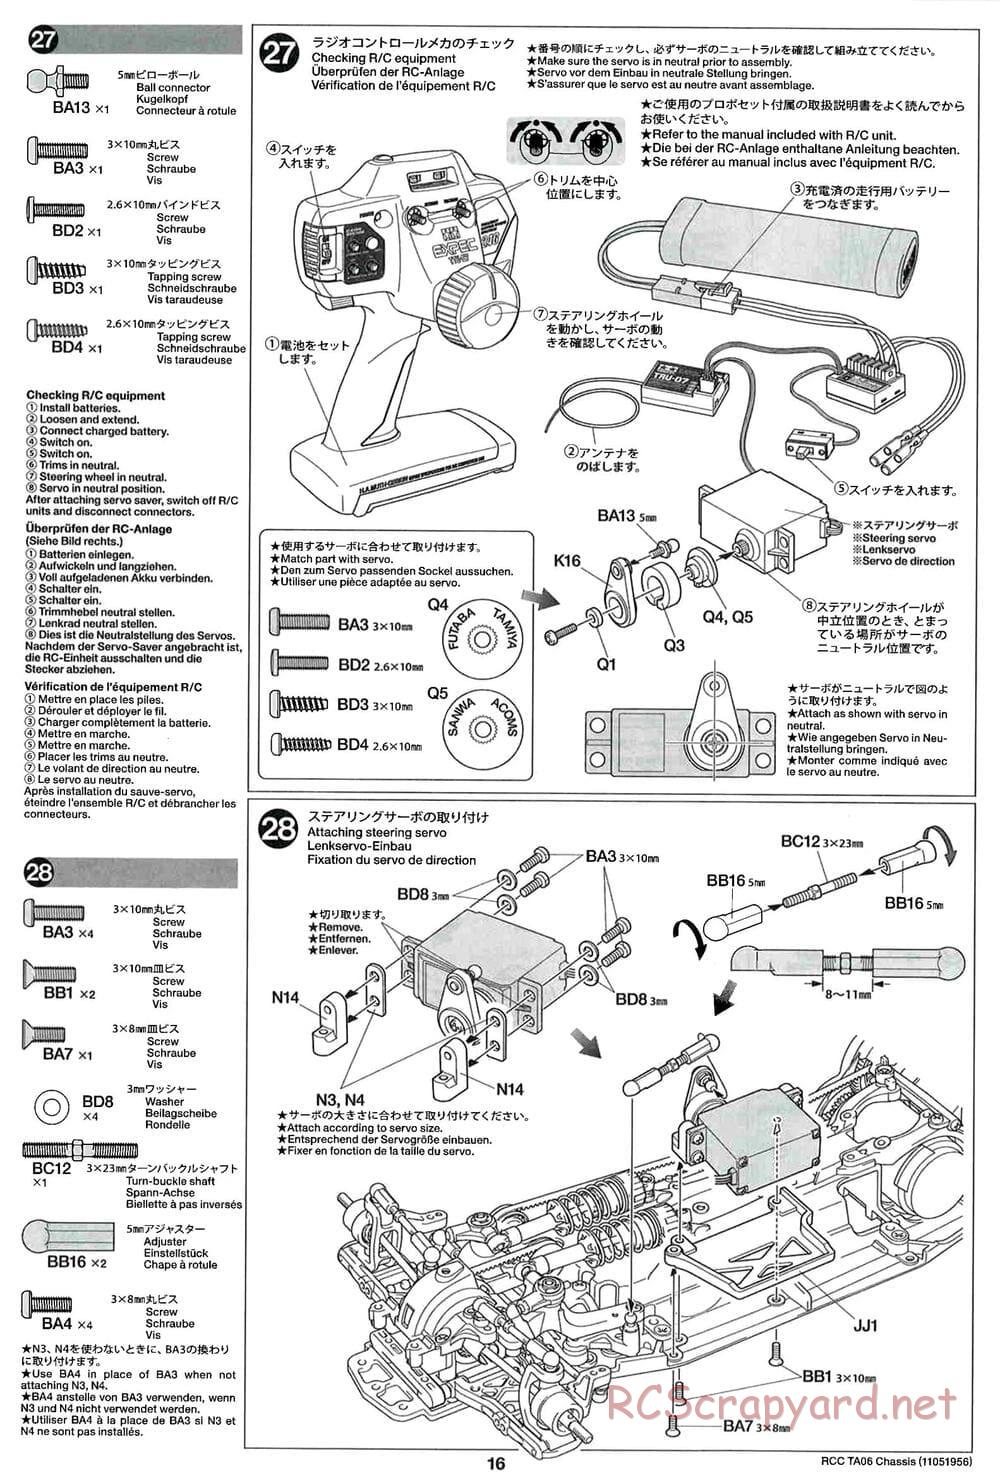 Tamiya - TA06 Chassis - Manual - Page 16